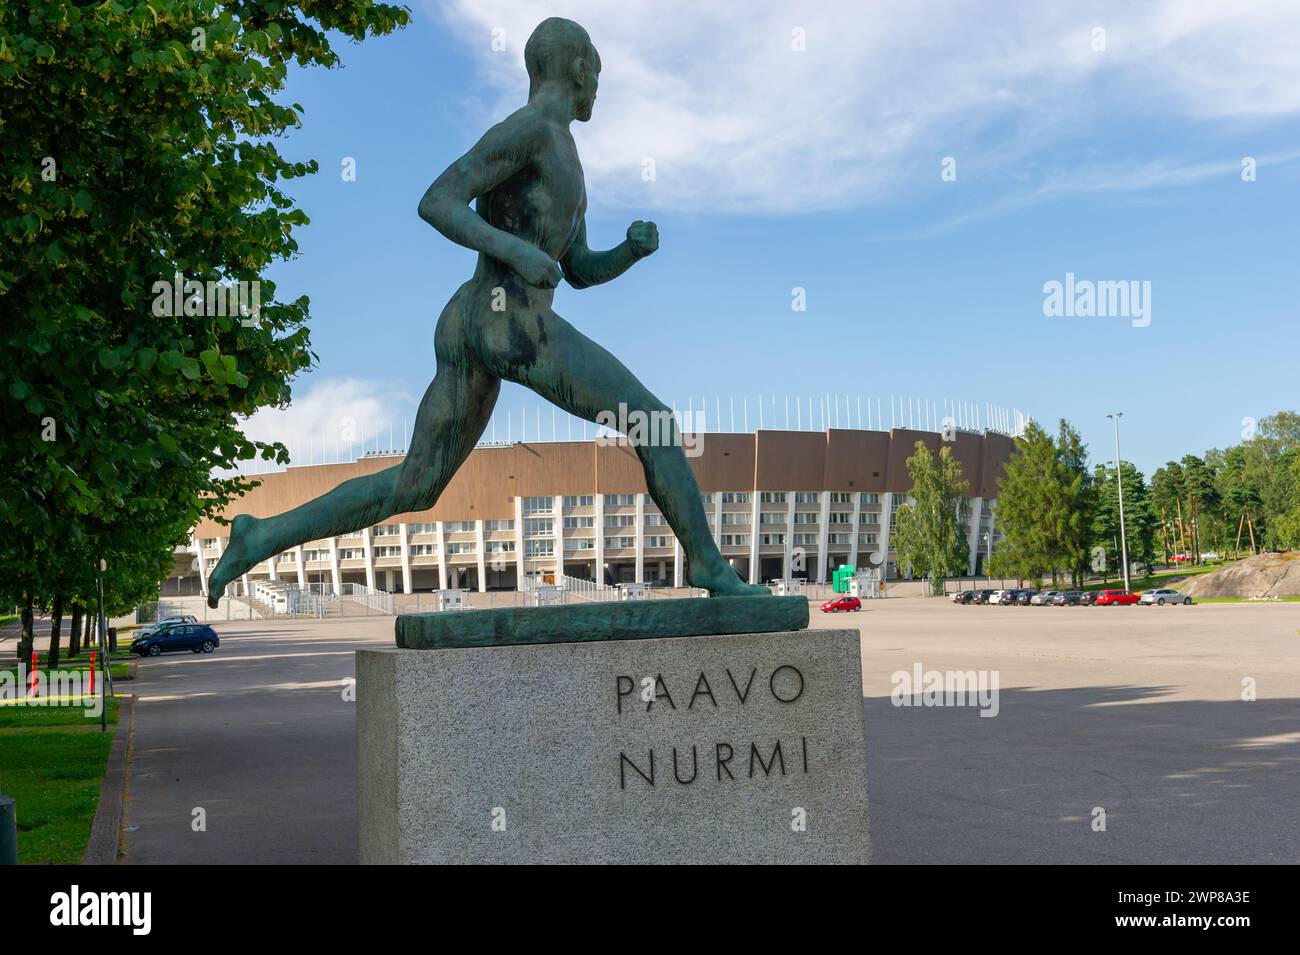 La statue Paavo Nurmi devant le Statium olympique d'Helsinki, Finlande Banque D'Images